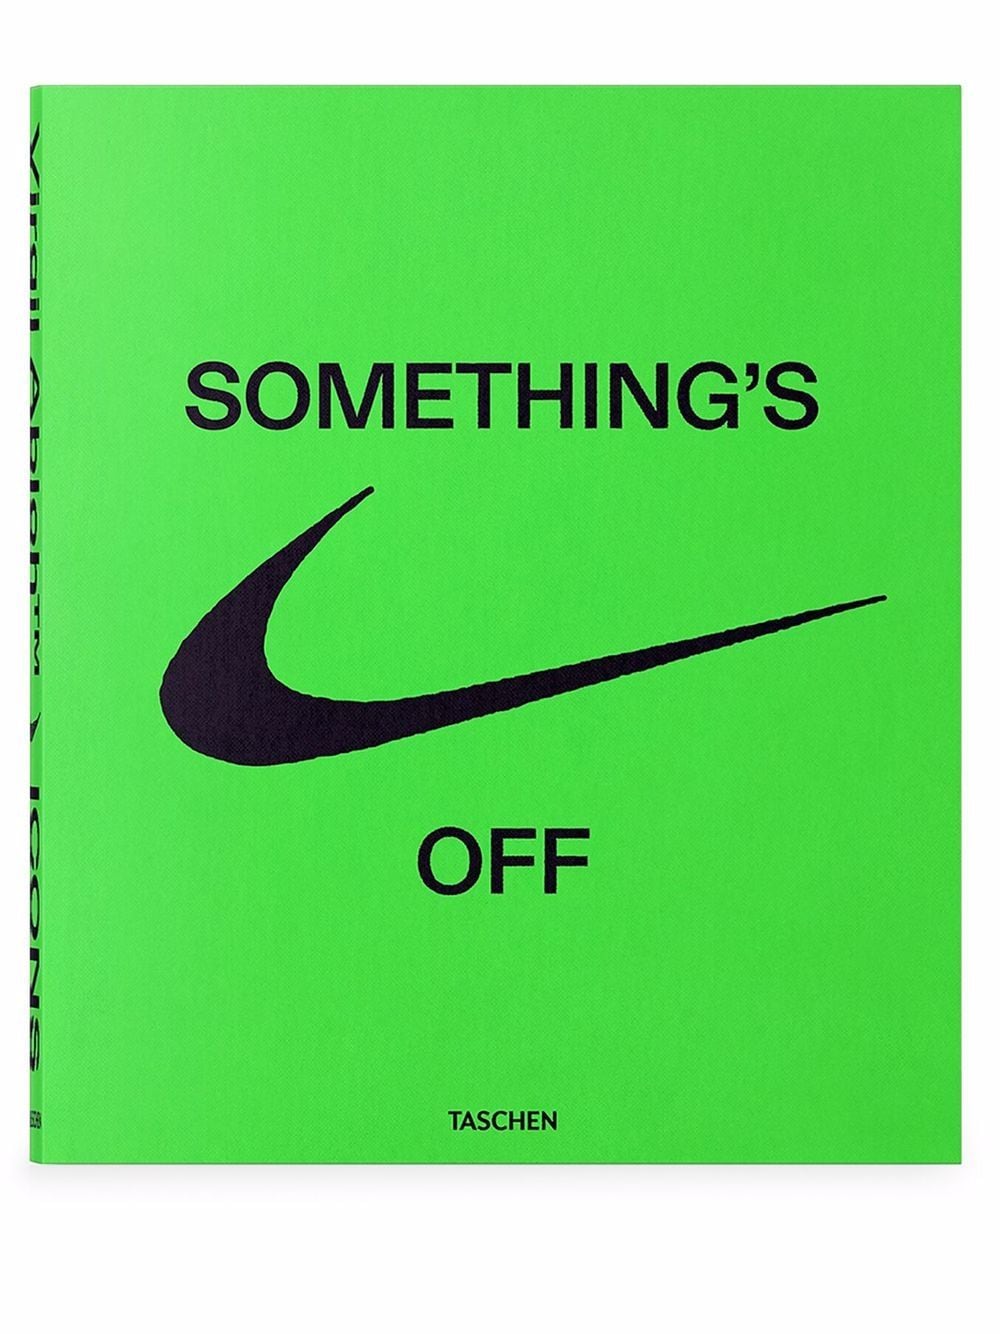 Virgil Abloh. Nike. Icons Taschen 6 735 руб.